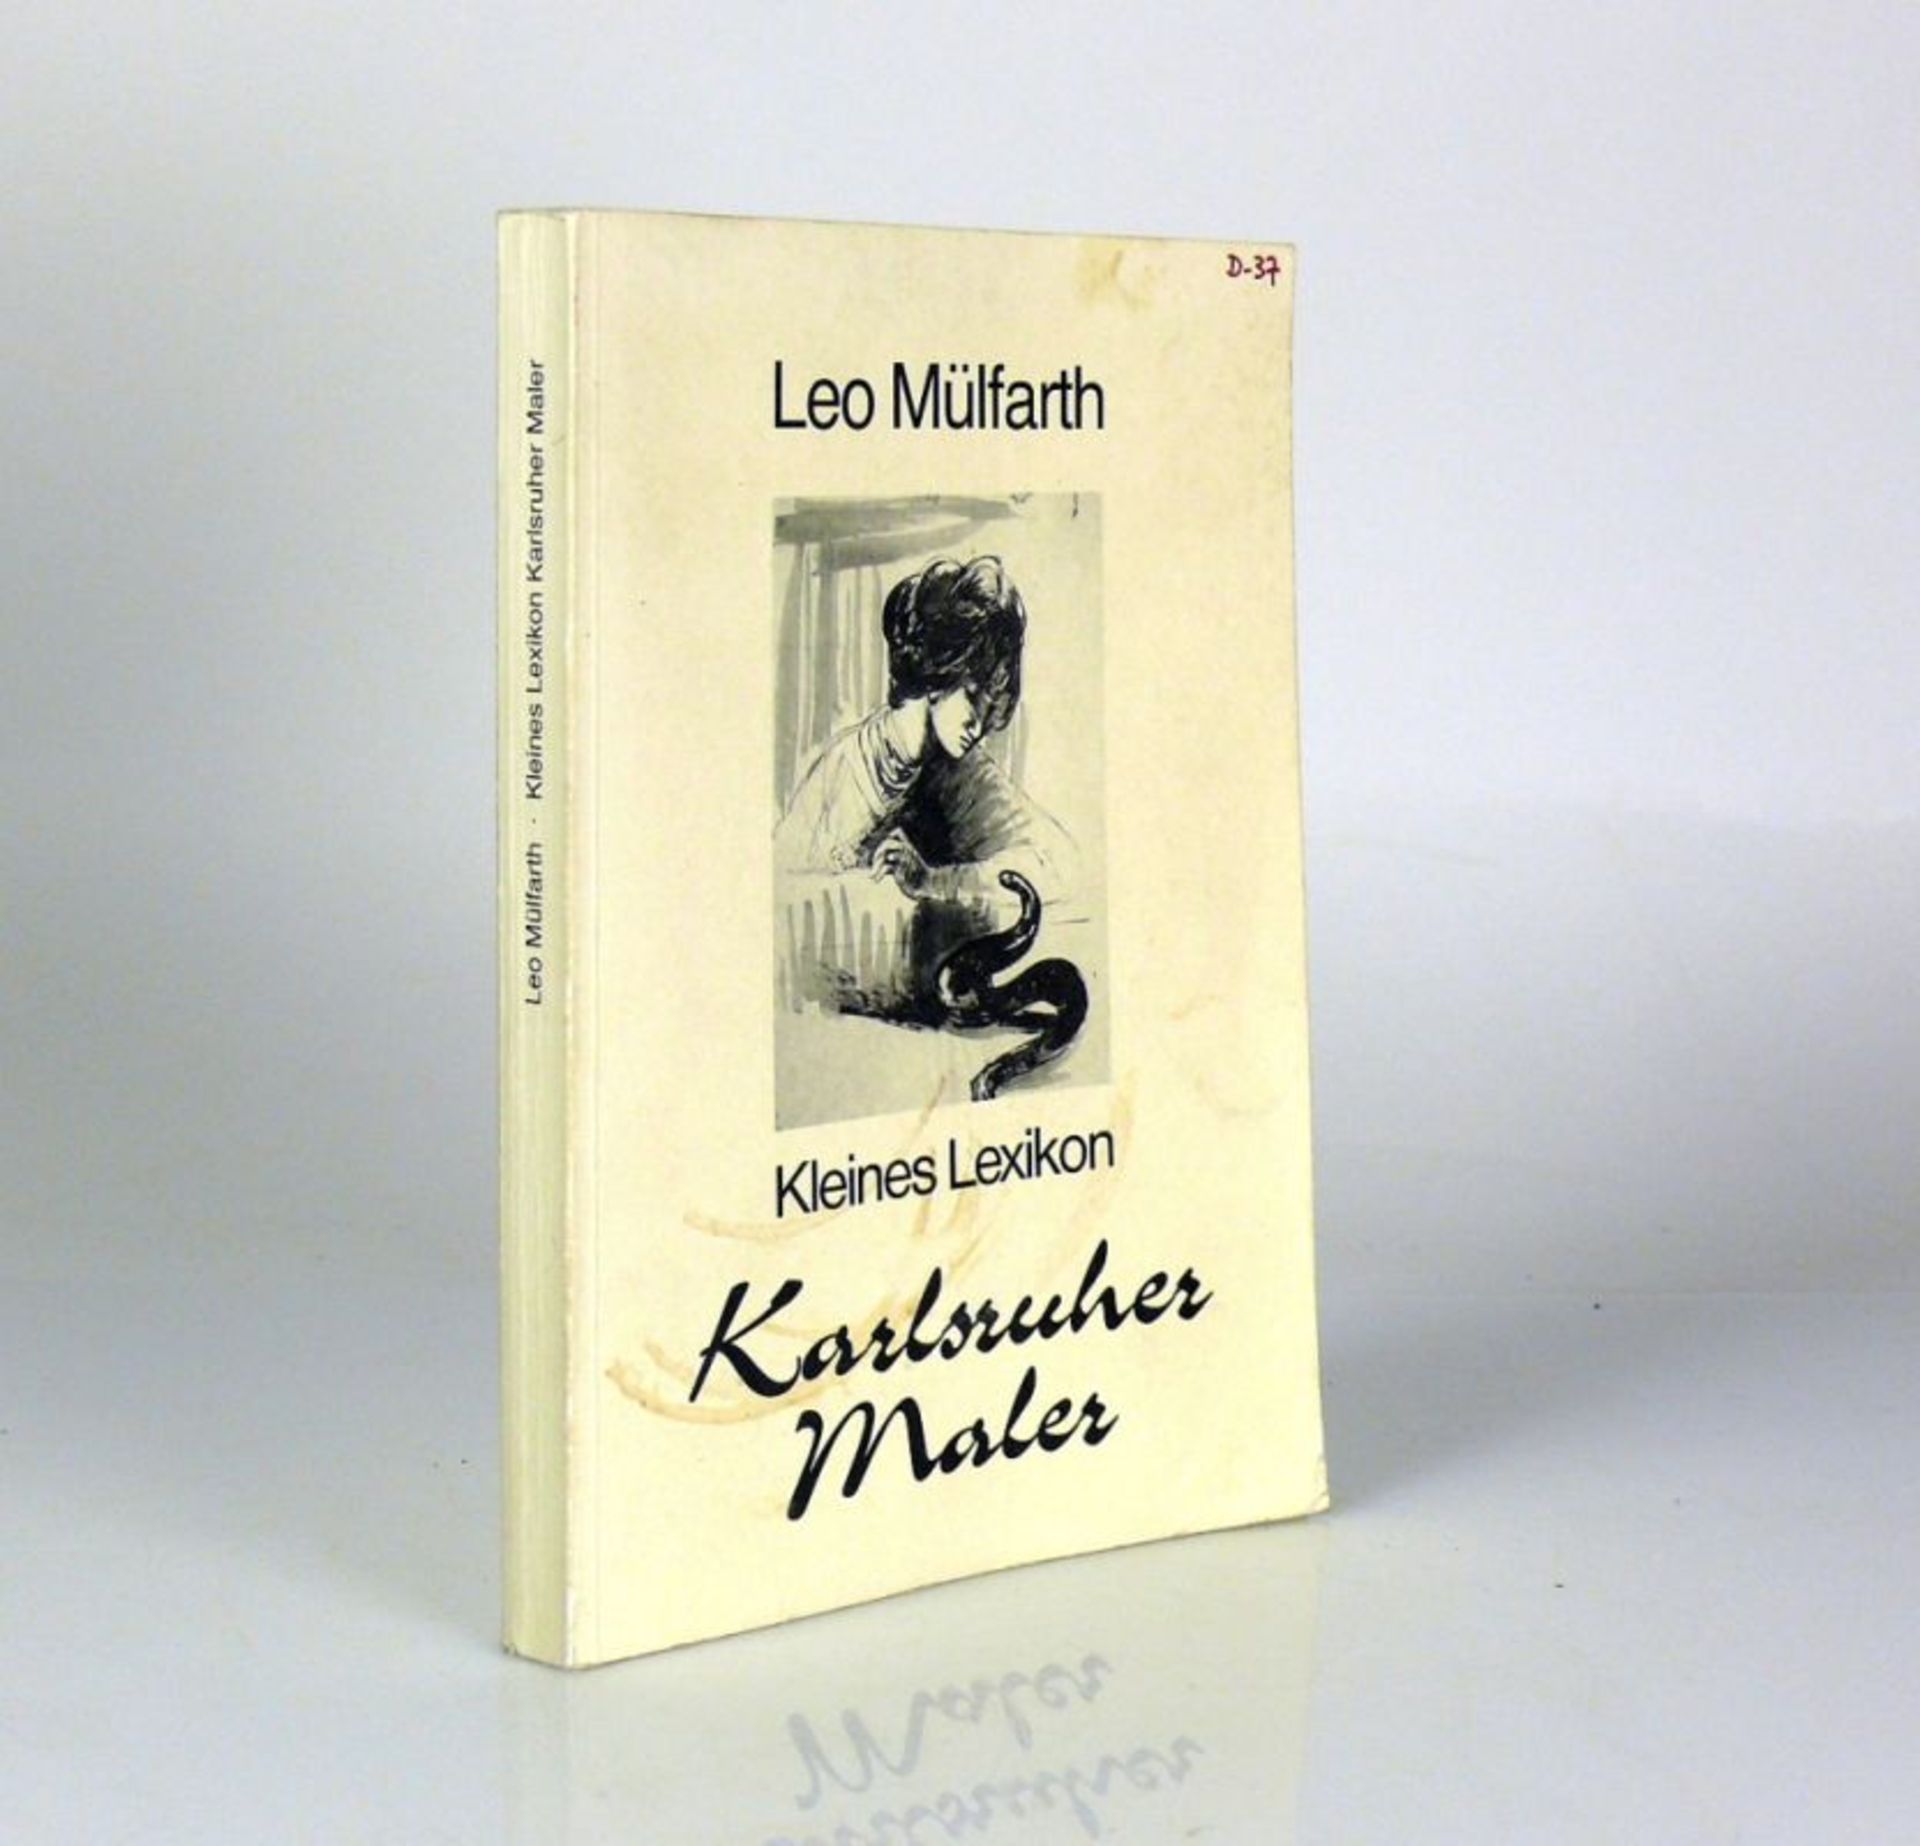 Karlsruher MalerKleines Lexikon von Leo Mülfarth; von 1987; mit Biographien und Farbfotos einiger